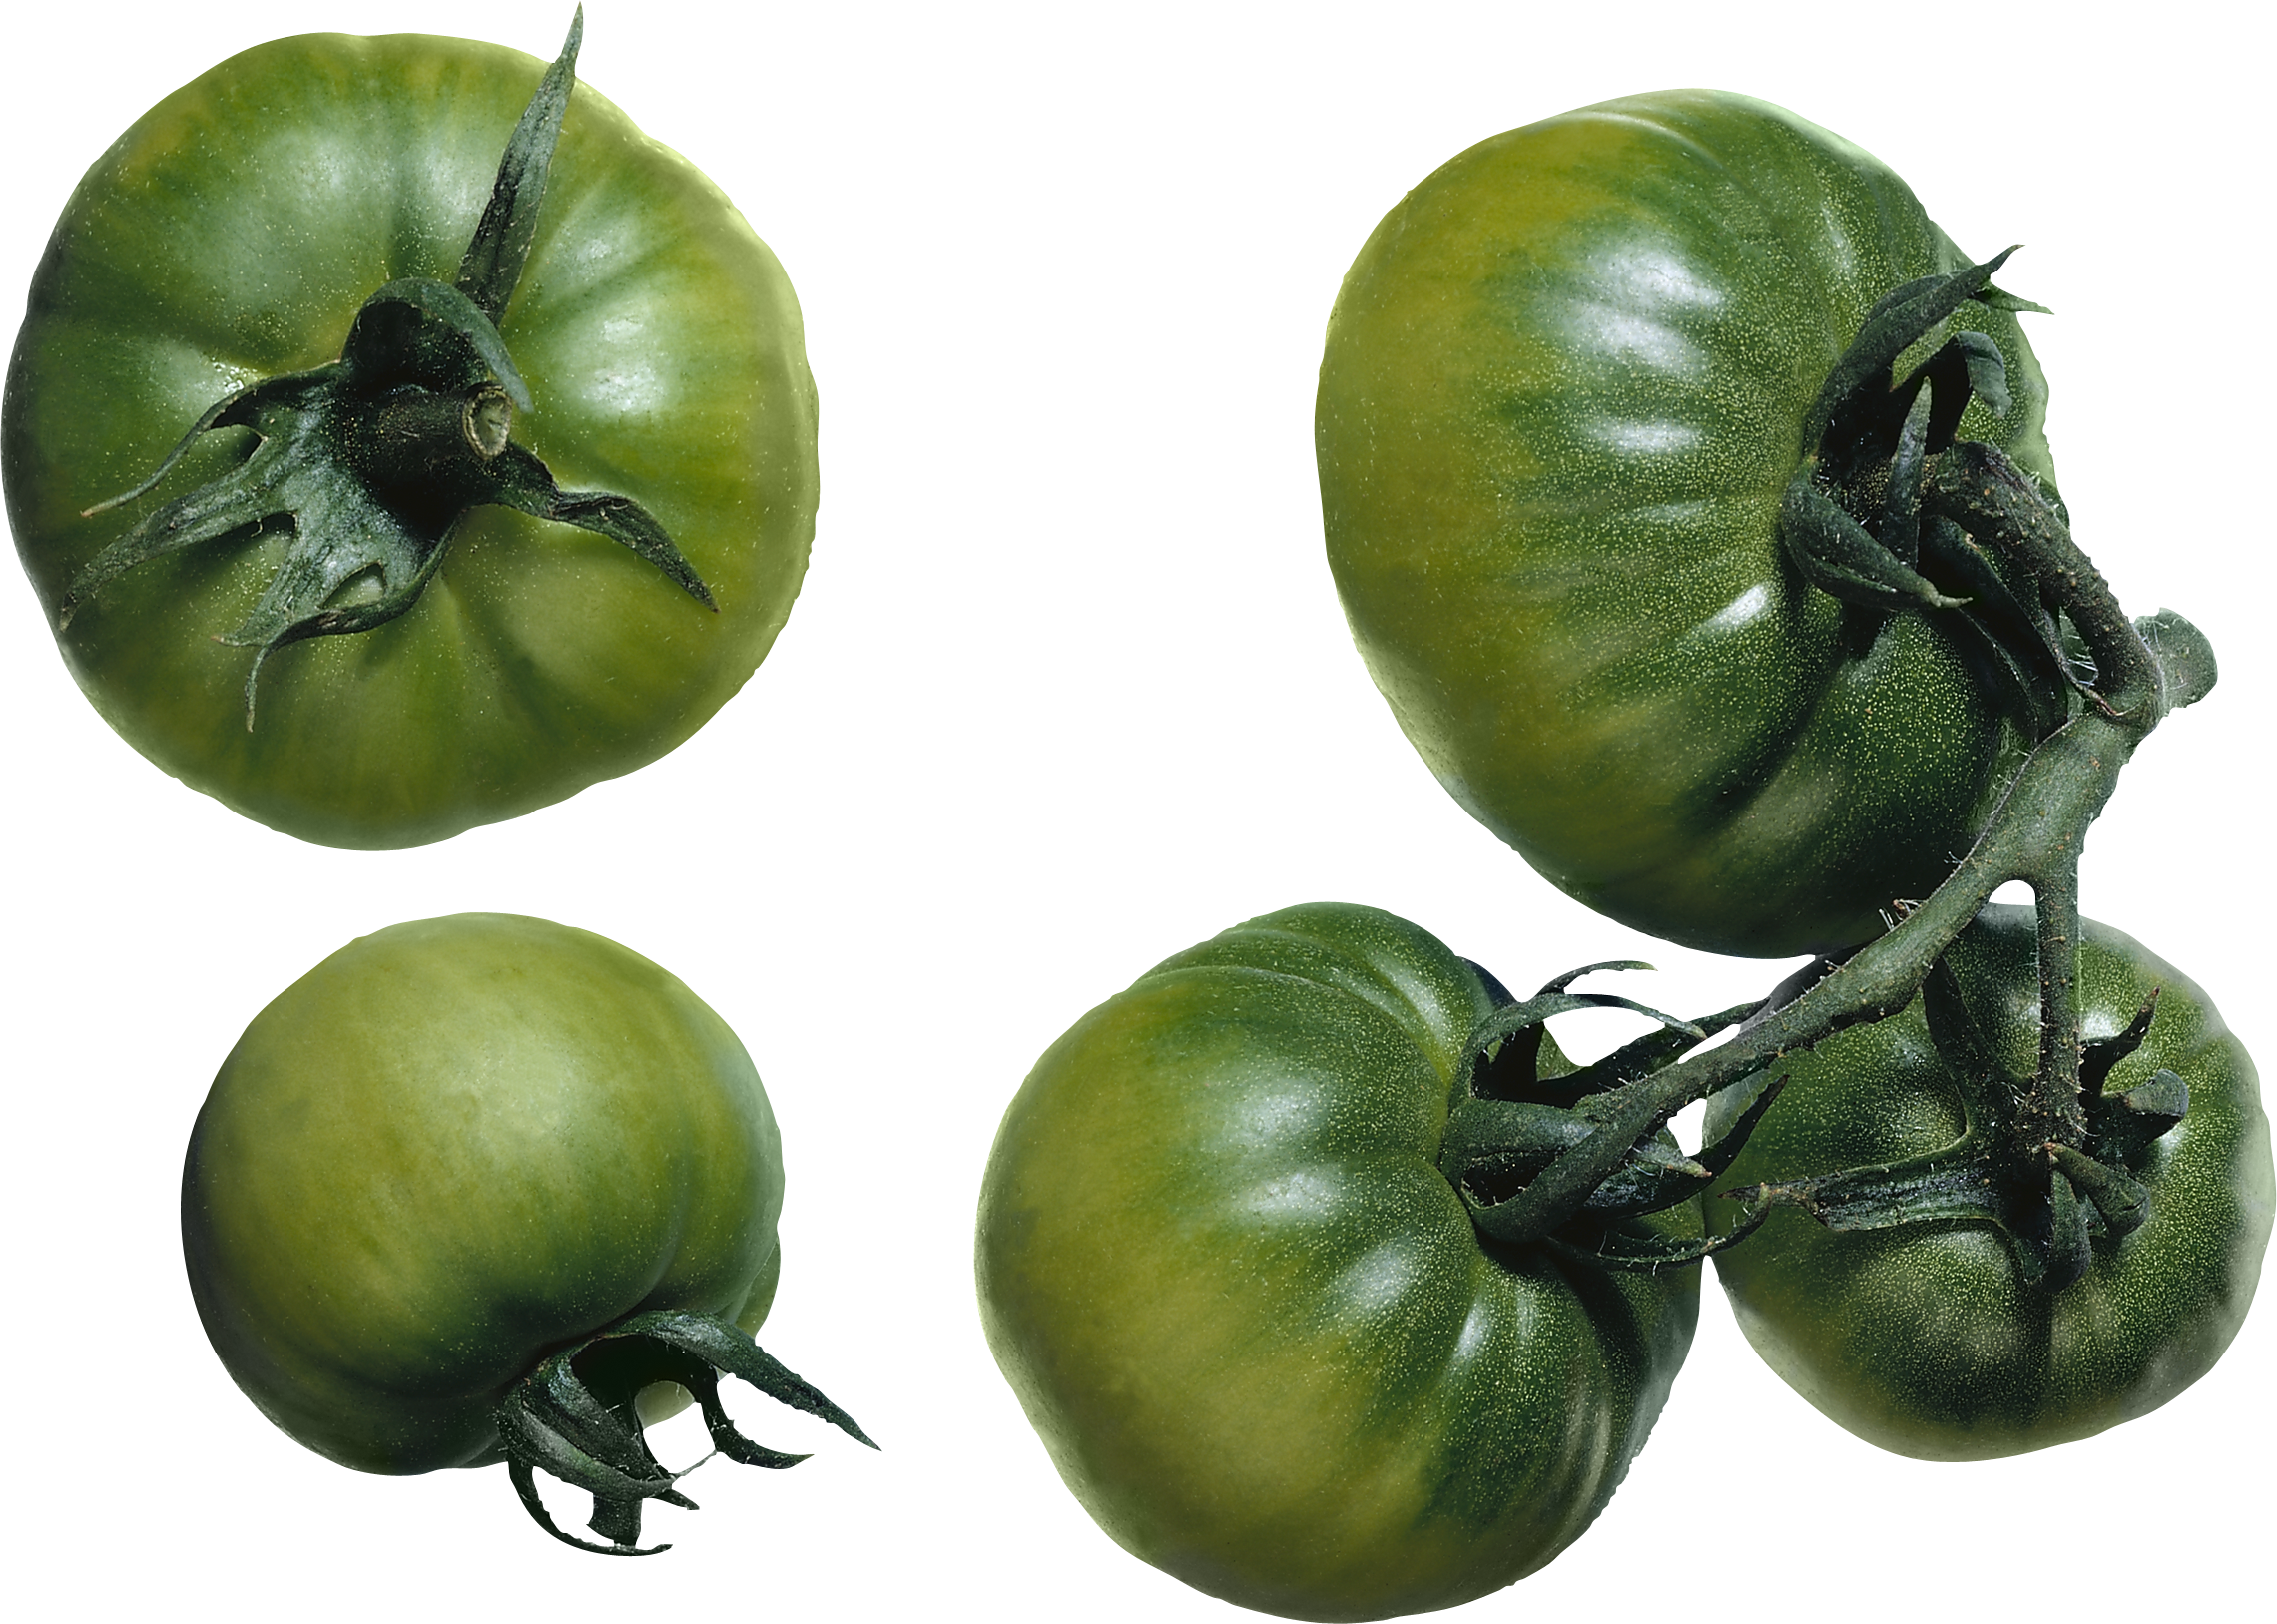 绿色西红柿